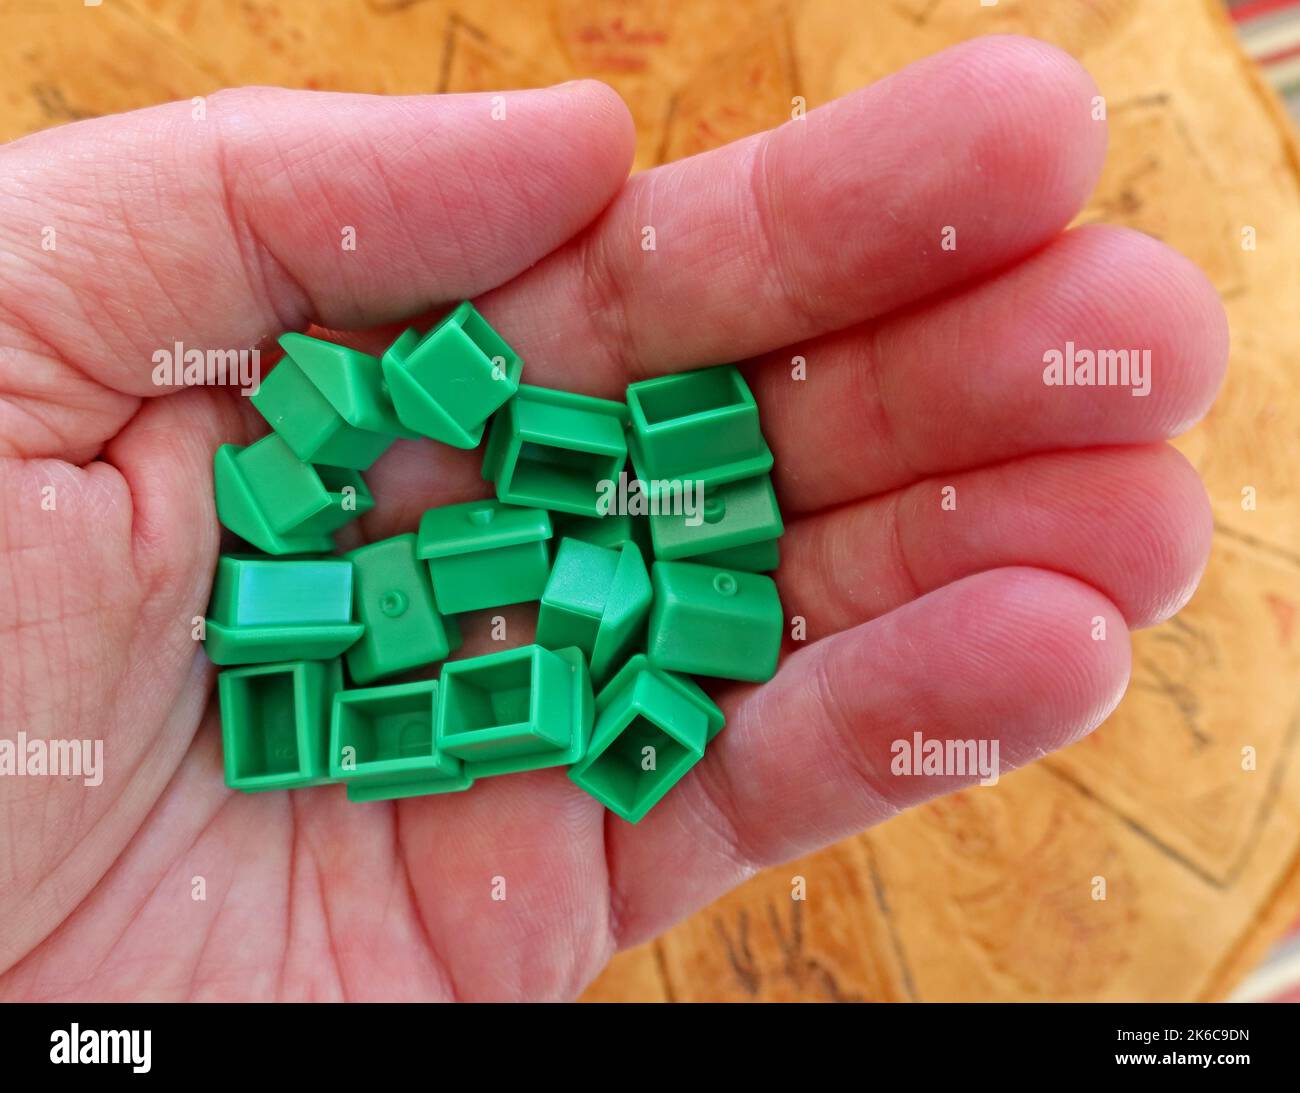 Eine Erwachsene Hand, die grüne Monopoly-Häuser zur Miete oder von hält, die Immobilien- und Wohnungsfragen des Vereinigten Königreichs vertritt Stockfoto